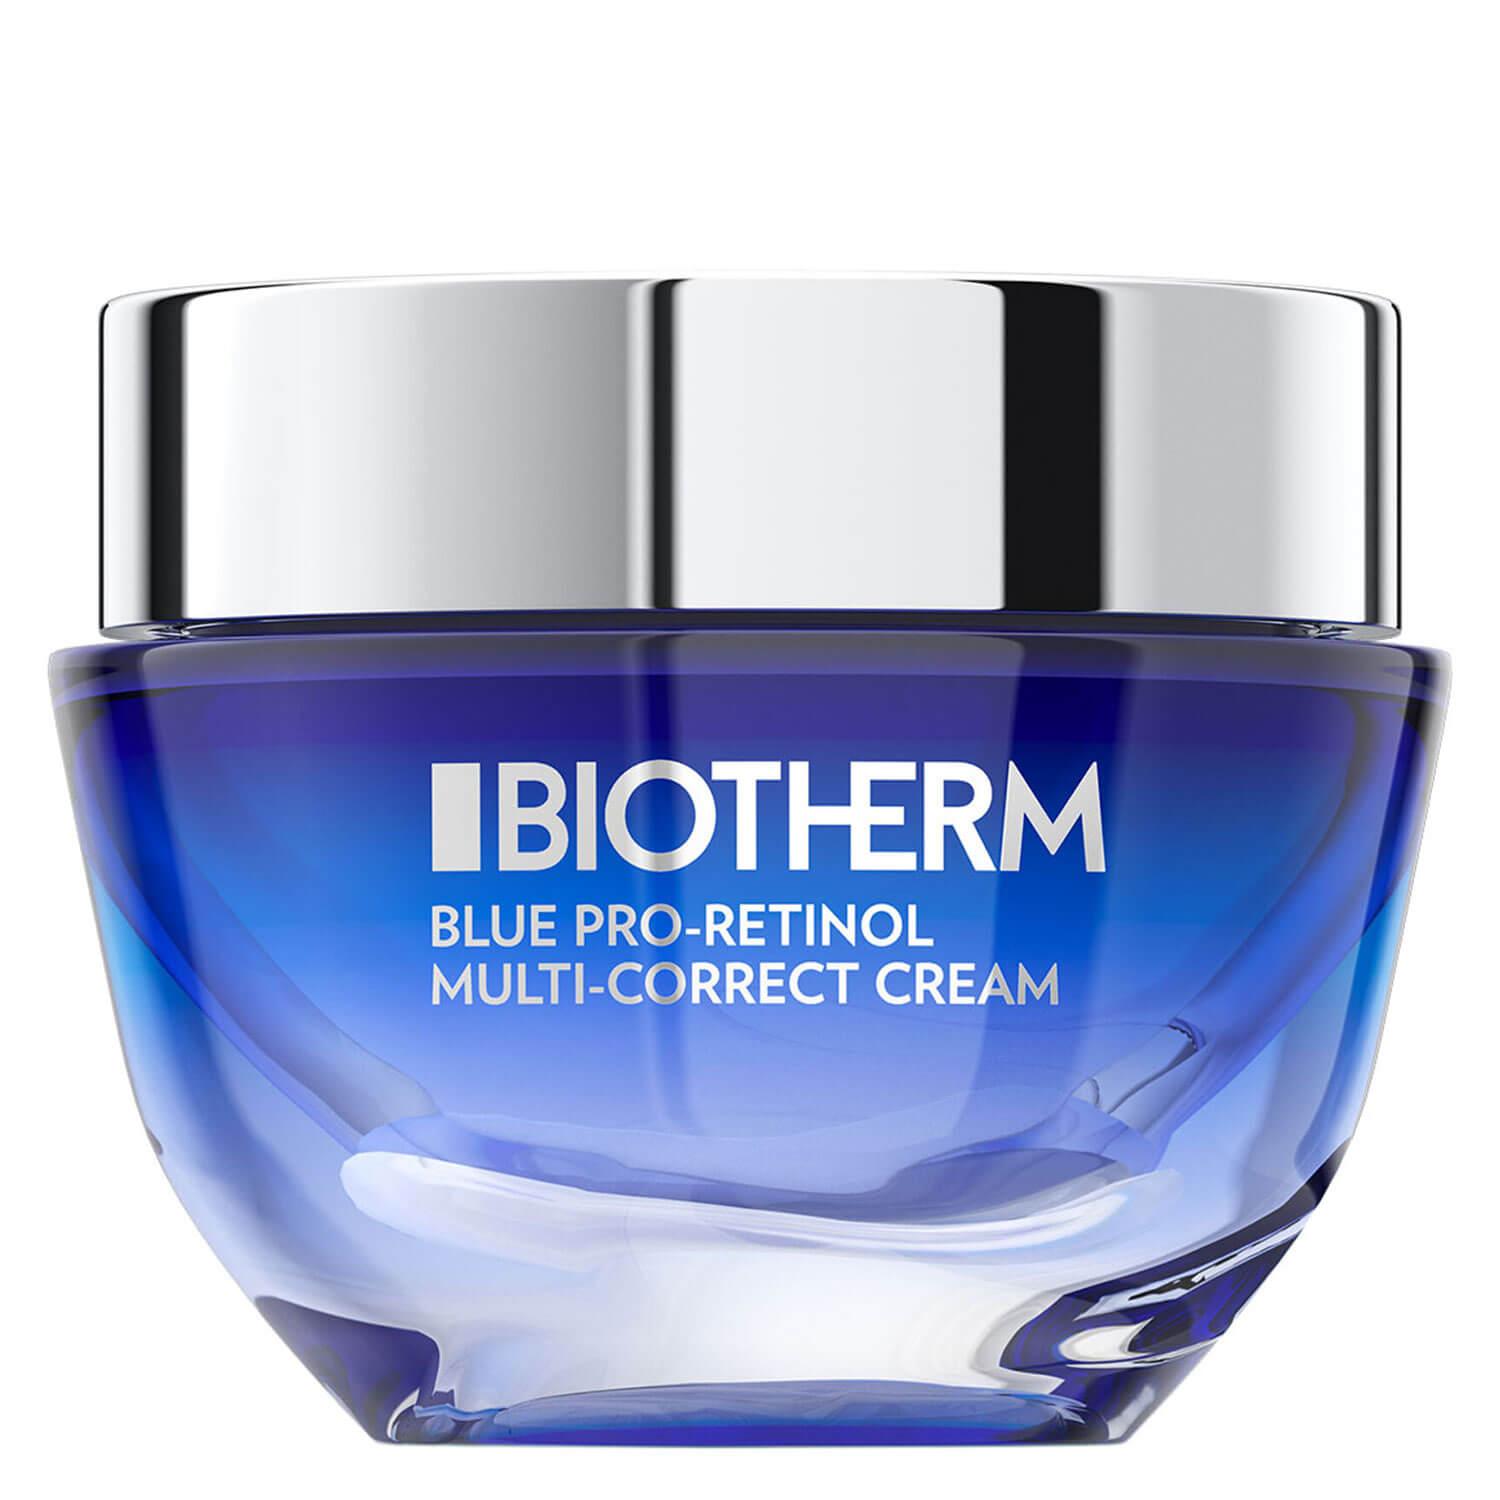 Blue Therapy - Blue Pro-Retinol Multi-Correct Cream